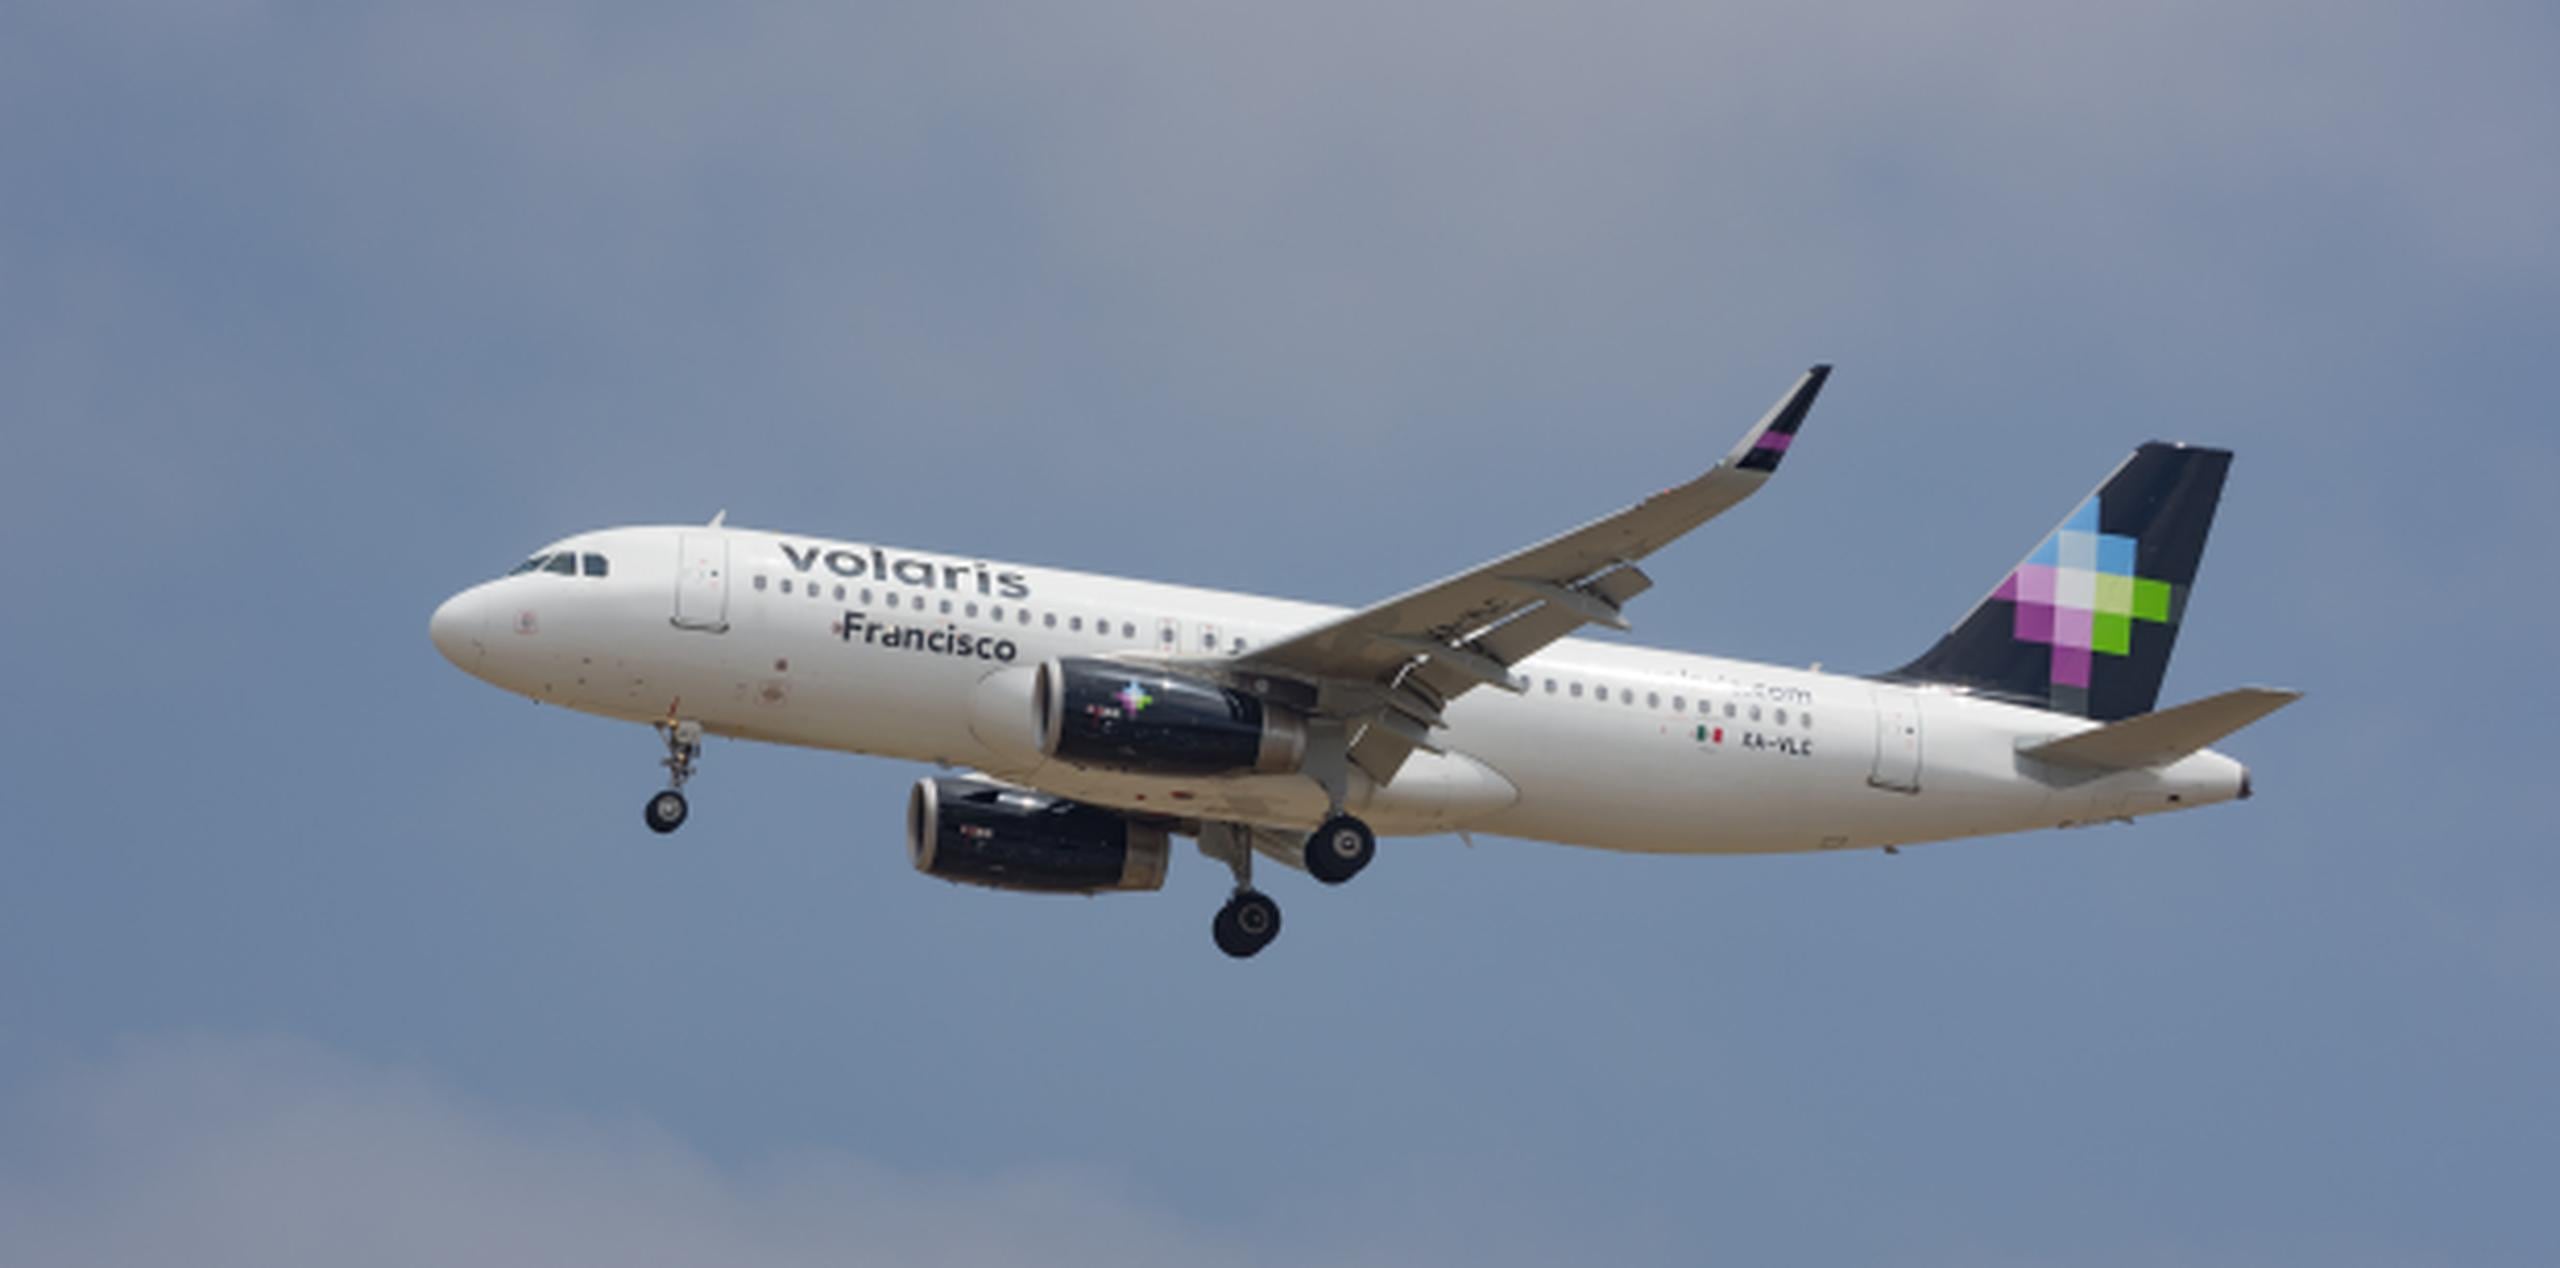 El vuelo fue realizado por la aerolínea Volaris. (Shutterstock)